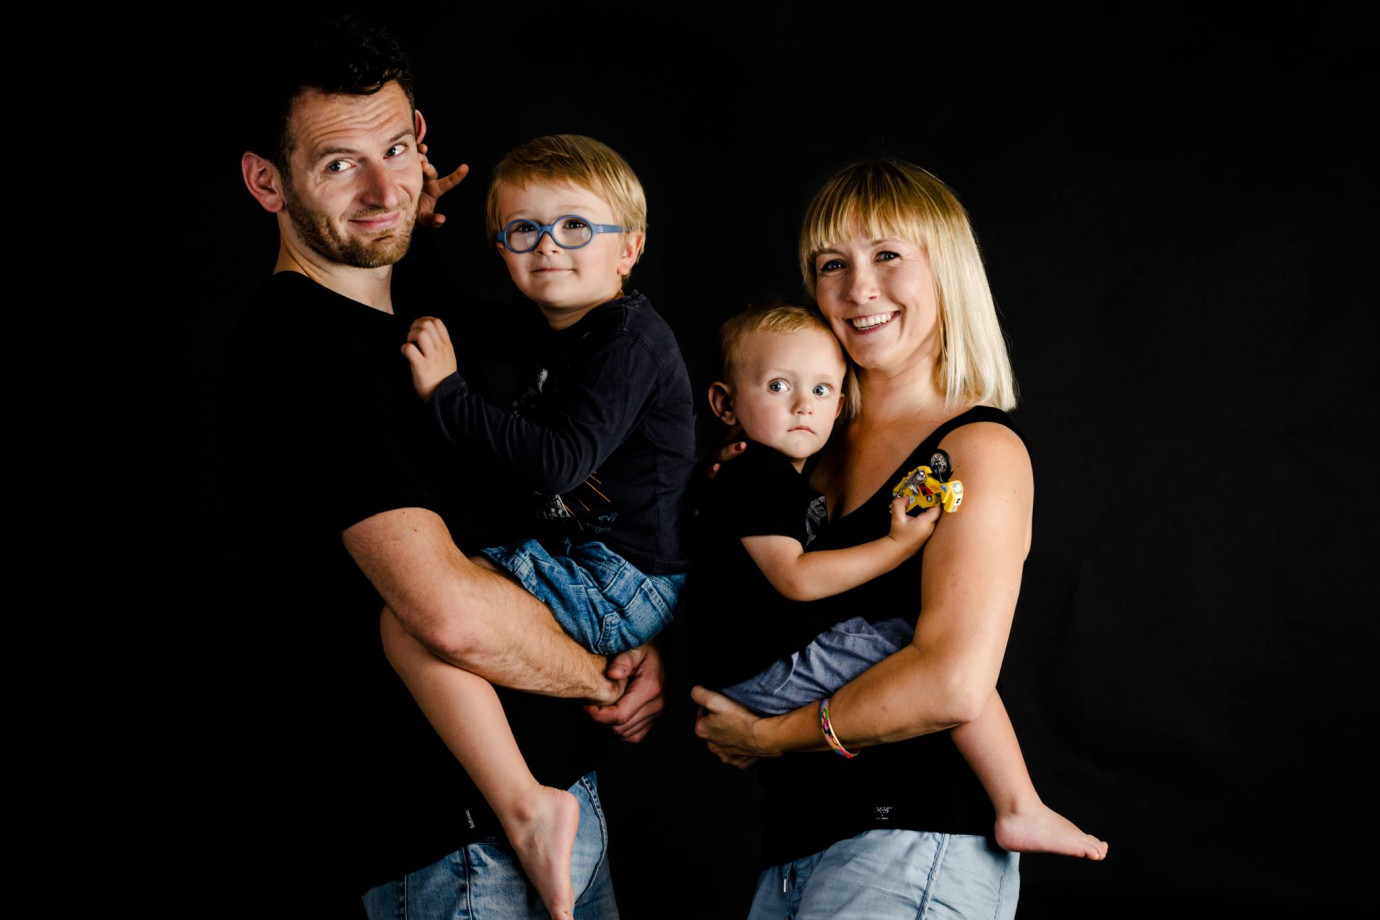 fotograf torun fotografia-alicja-trojnar portfolio zdjecia rodzinne fotografia rodzinna sesja